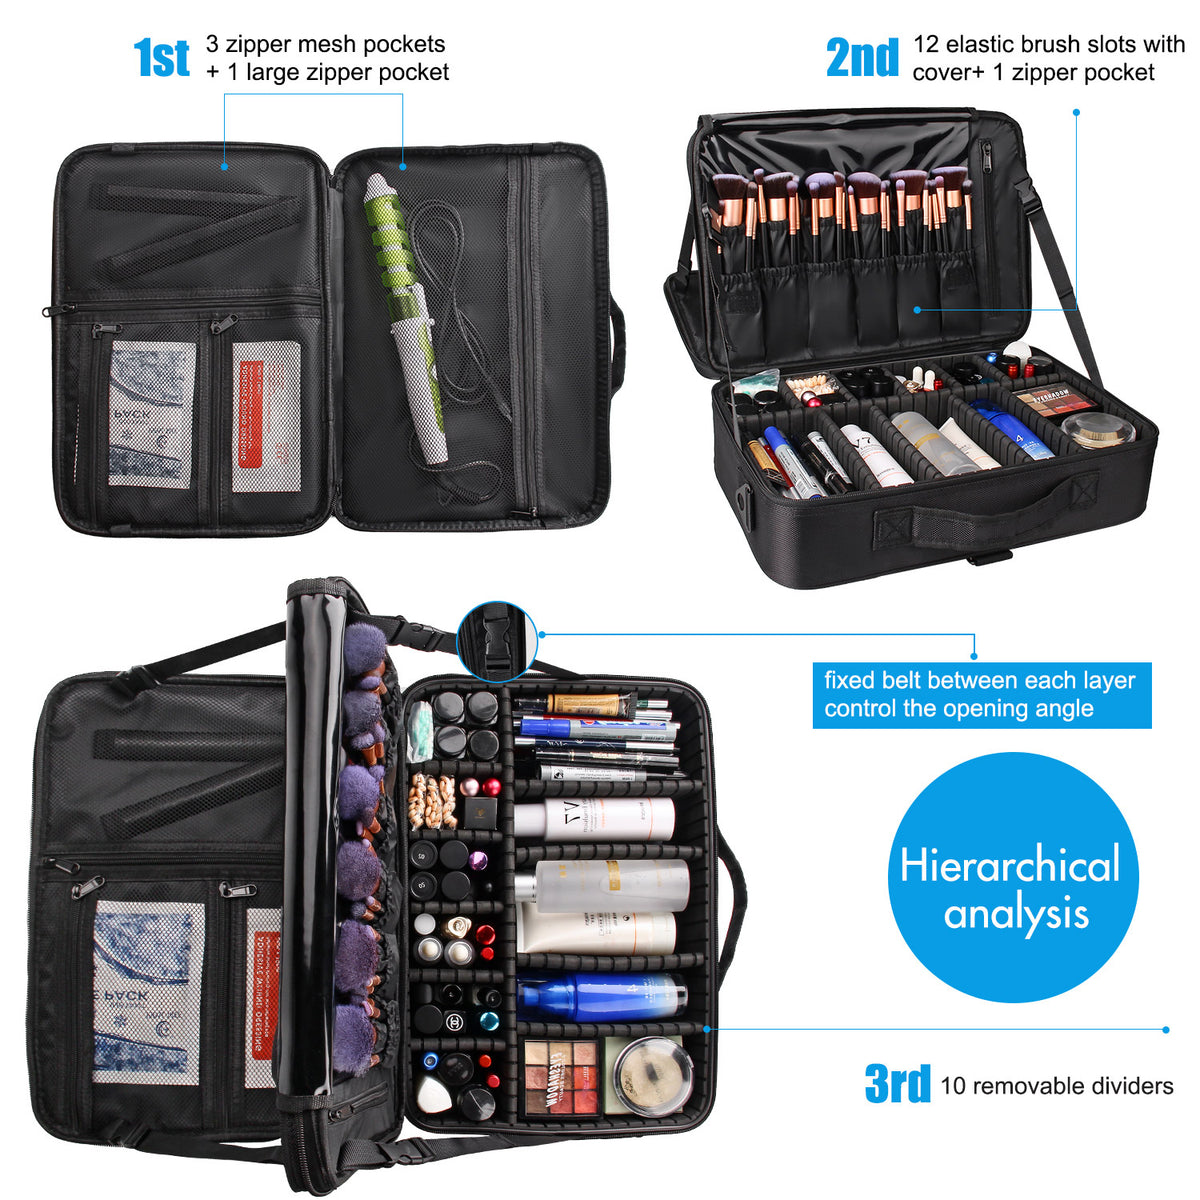  EACHY Travel Makeup Bag,Large Capacity Cosmetic Bags